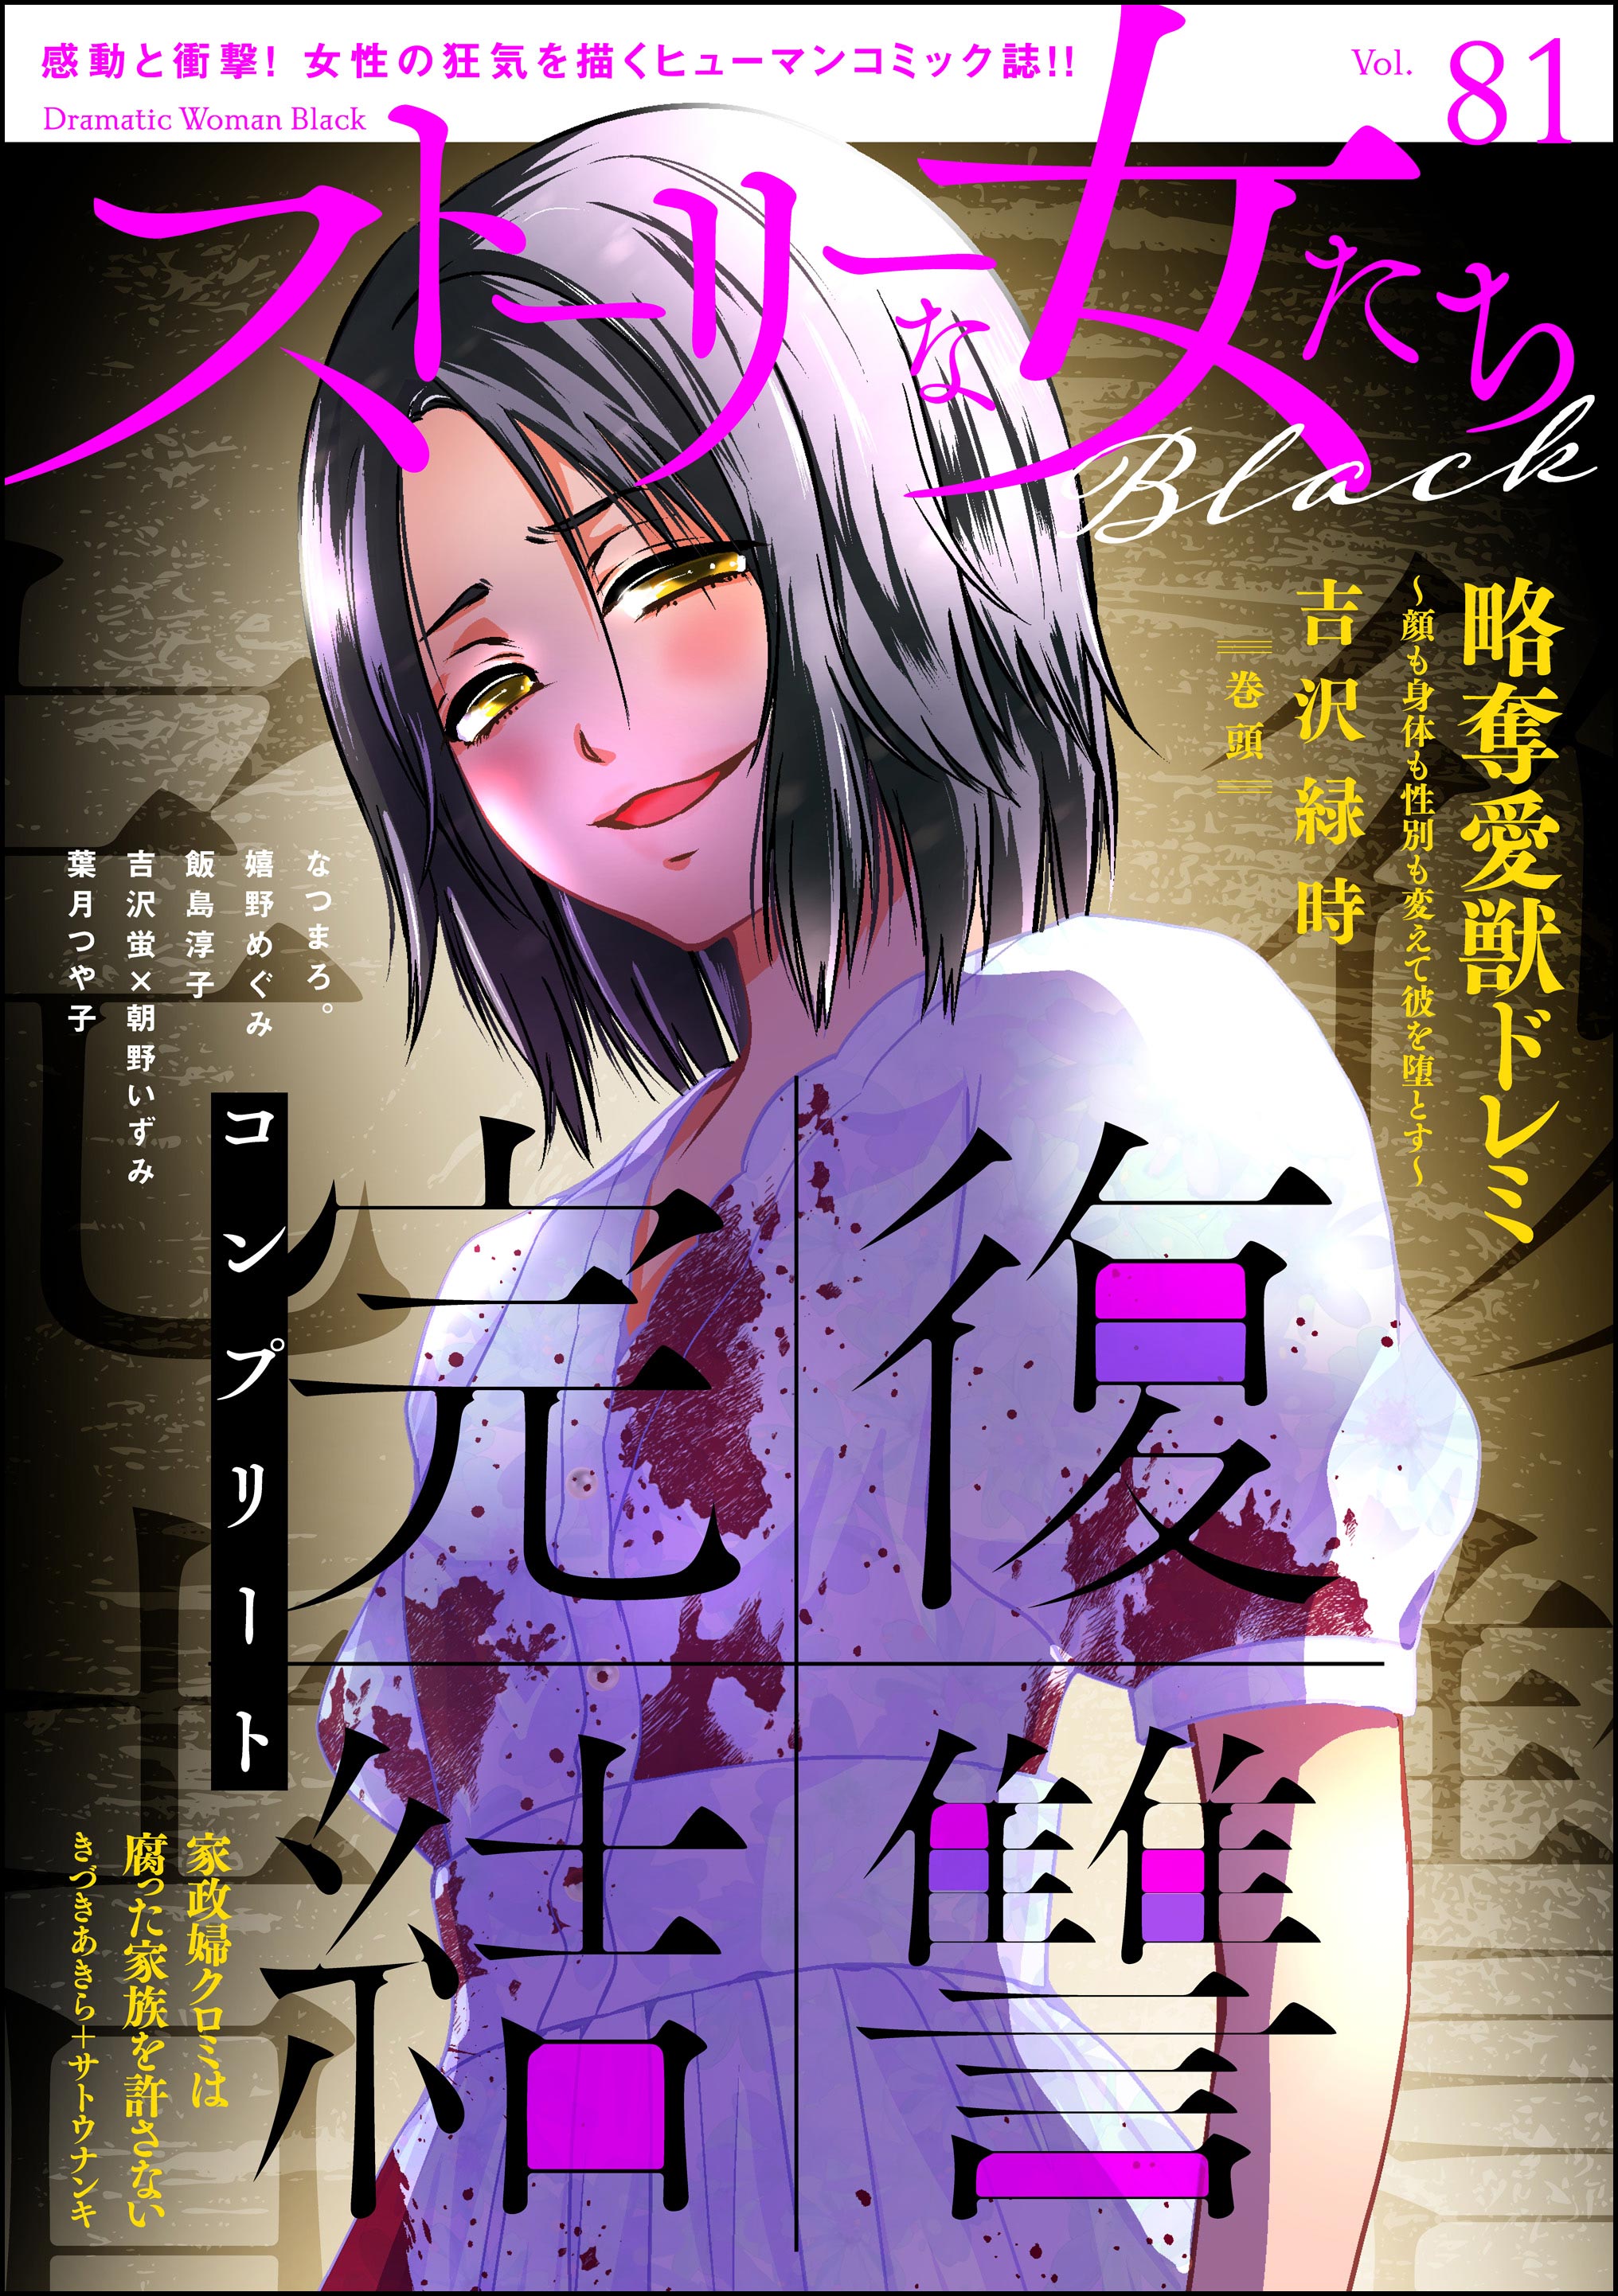 ストーリーな女たち ブラック Vol.81 - 吉沢緑時/きづきあきら＋